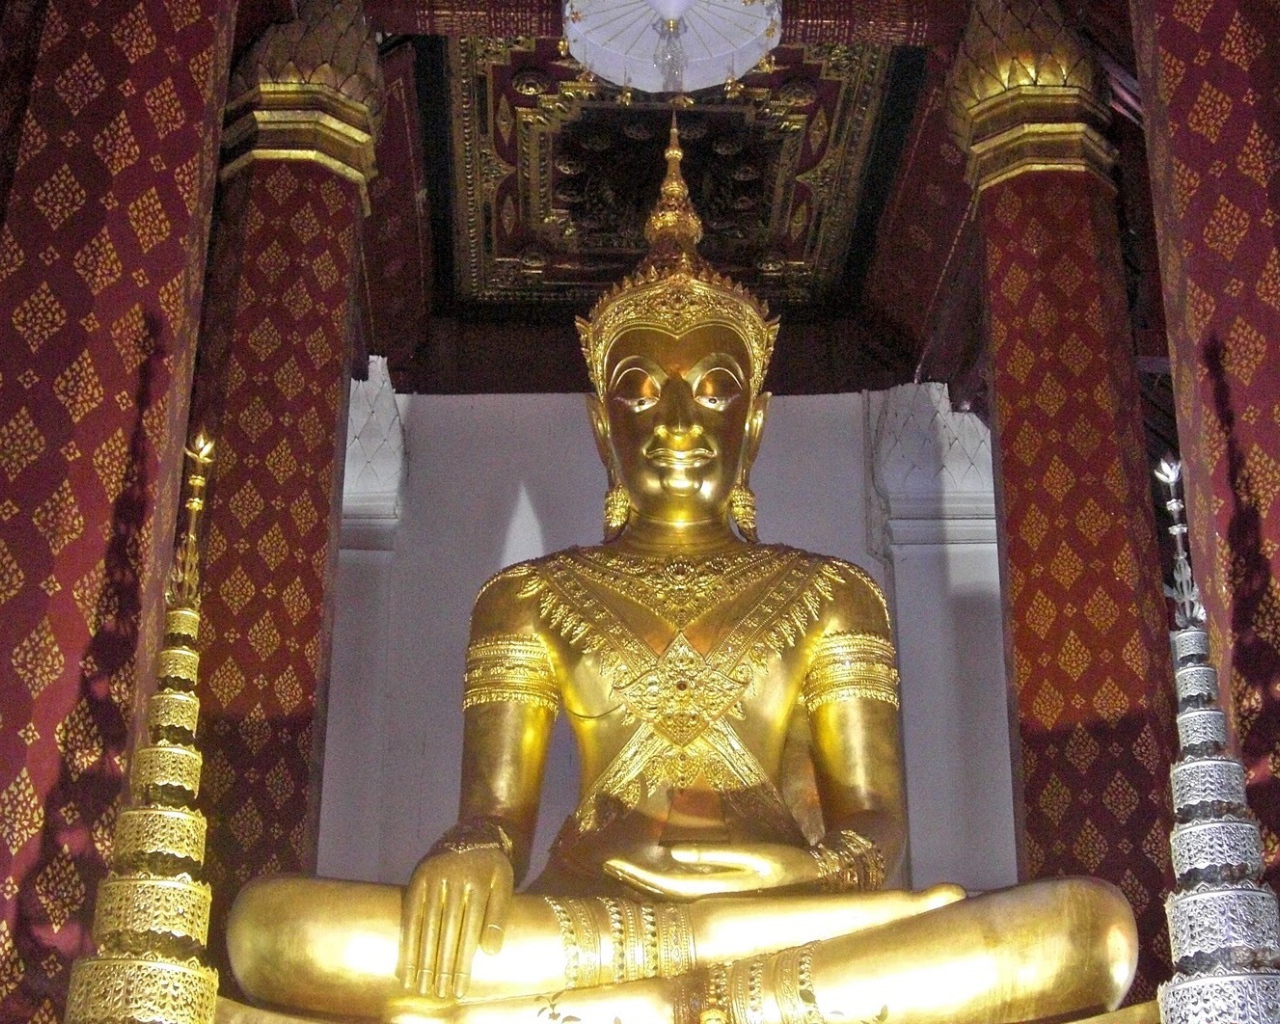 Golden Buddha at the resort Ayuthaya, Thailand